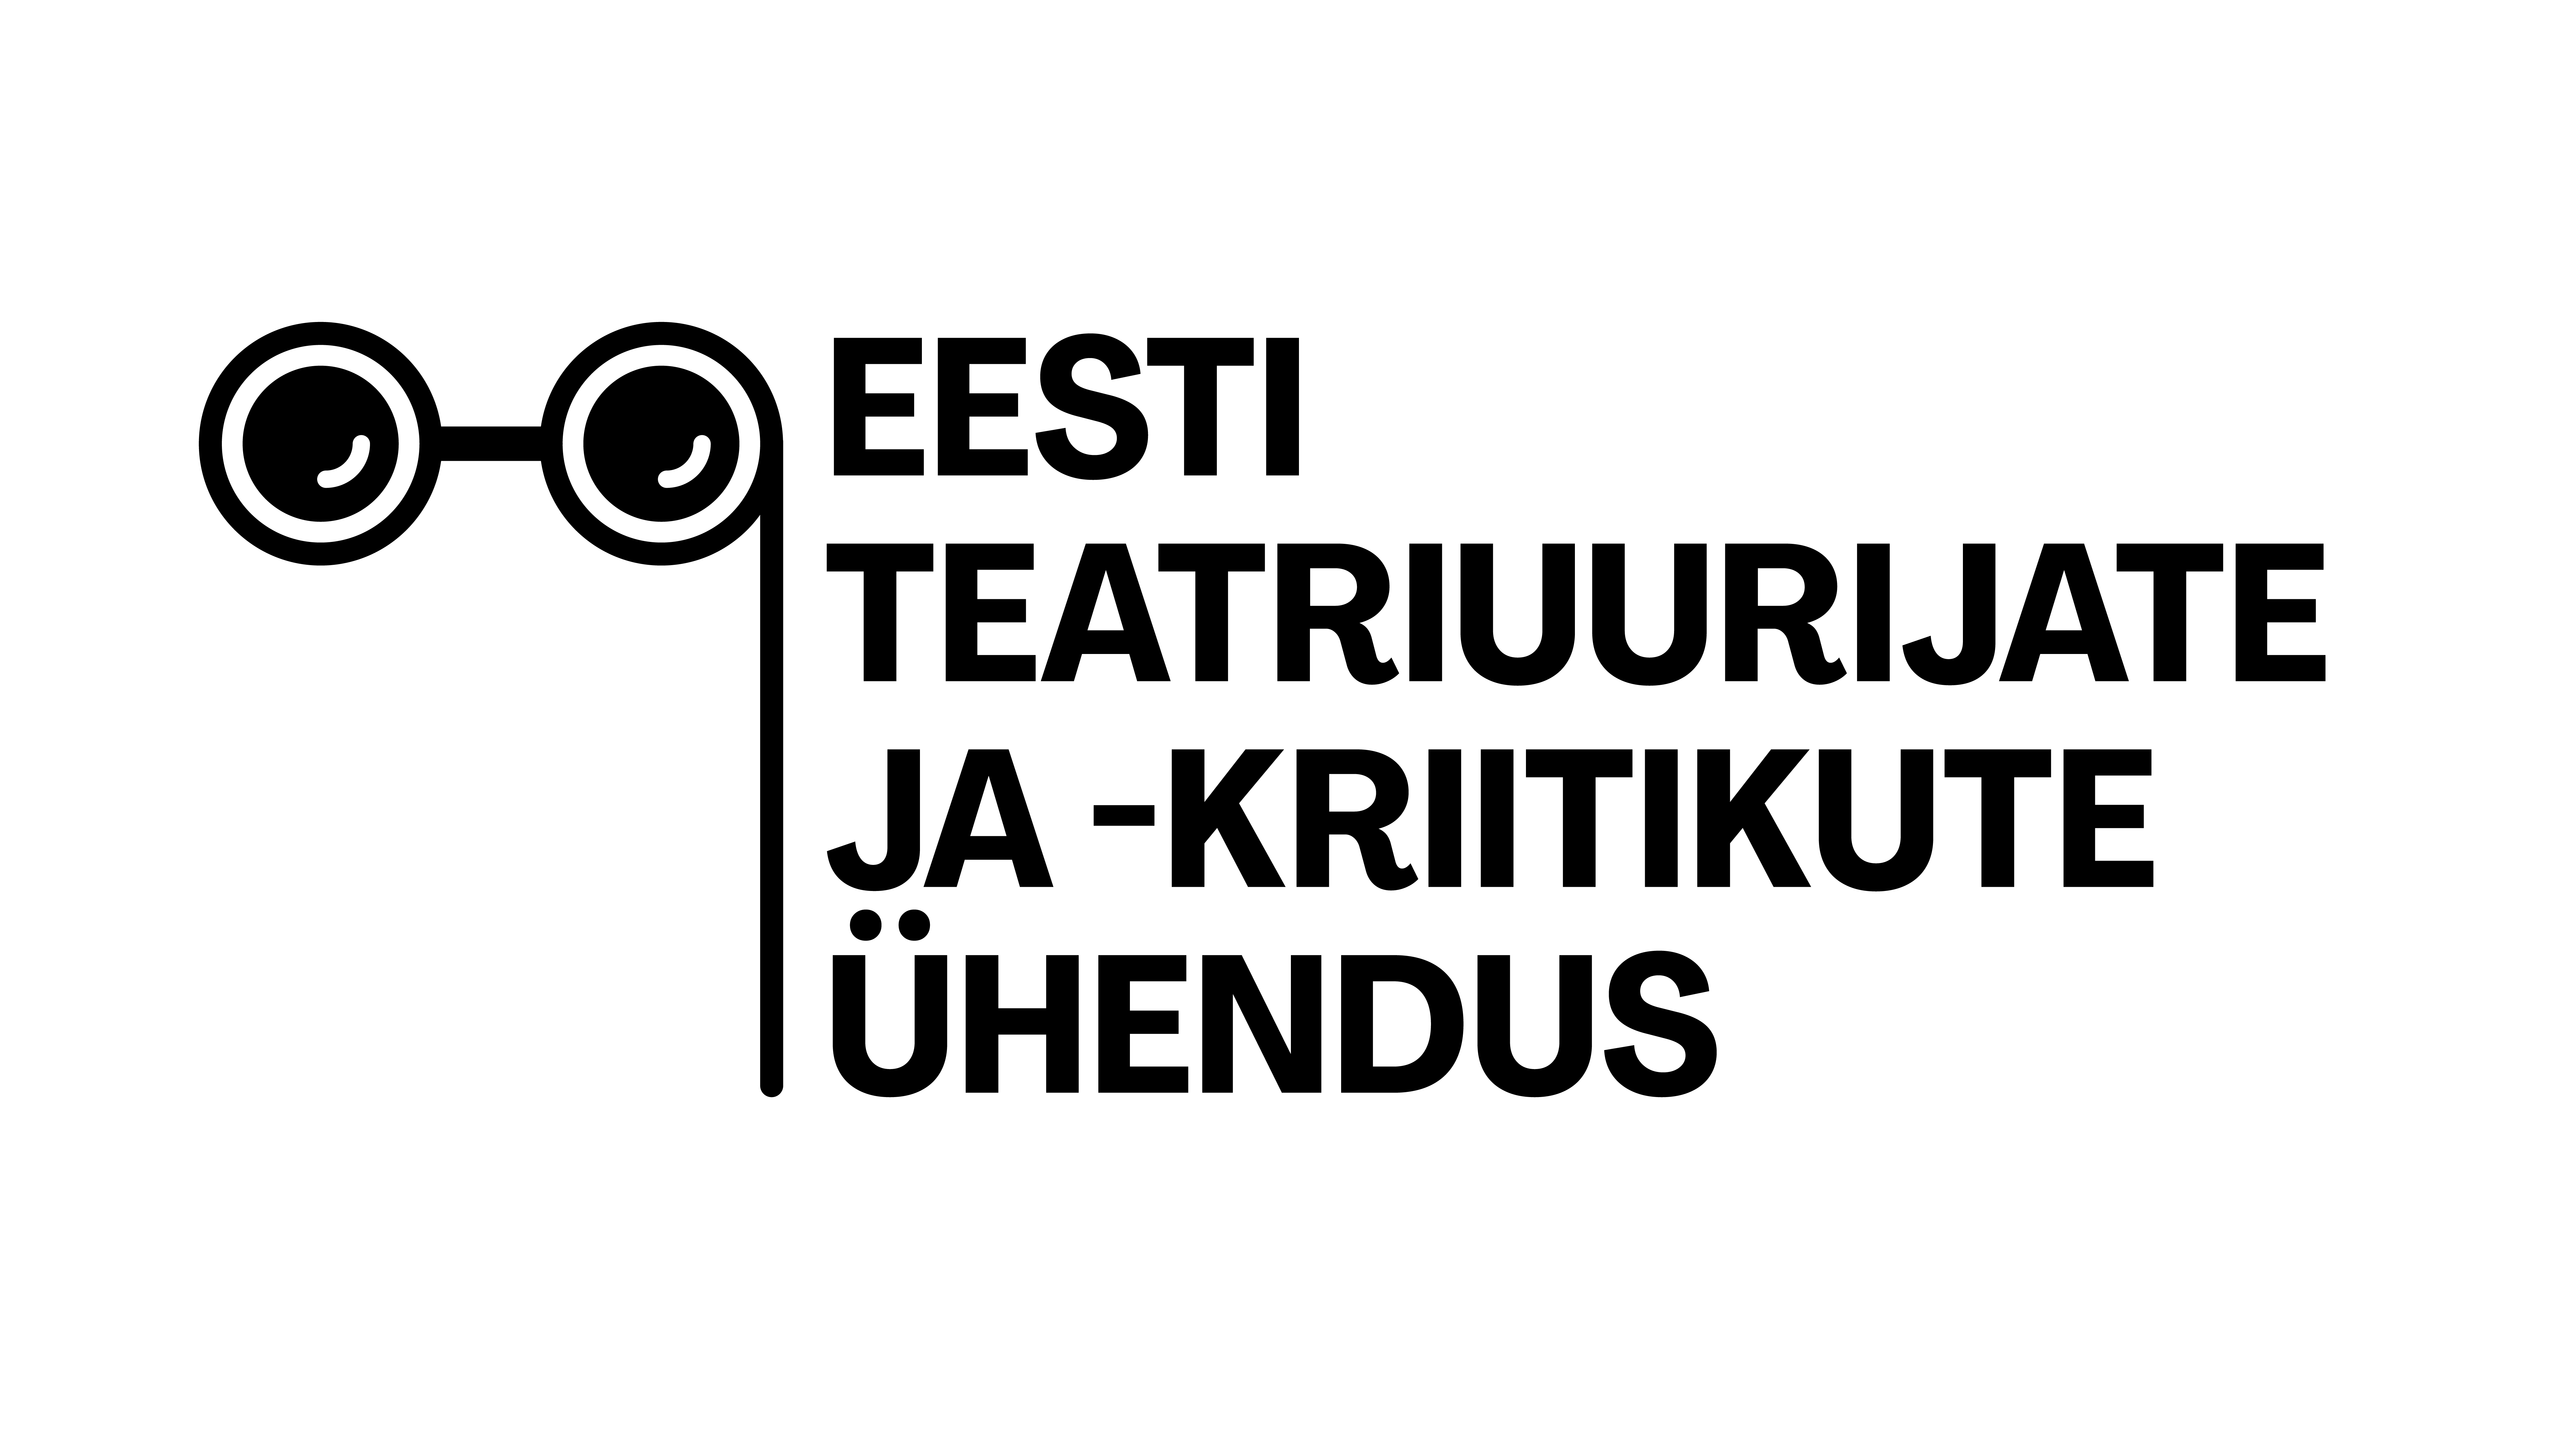 Pildil on Eesti Teatriuurijate ja -kriitikute ühenduse musta värvi logo, mille vasakus küljes on teatribinokkel ning paremal kirjas "Eesti Teatriuurijate ja -kriitikute Ühendus".